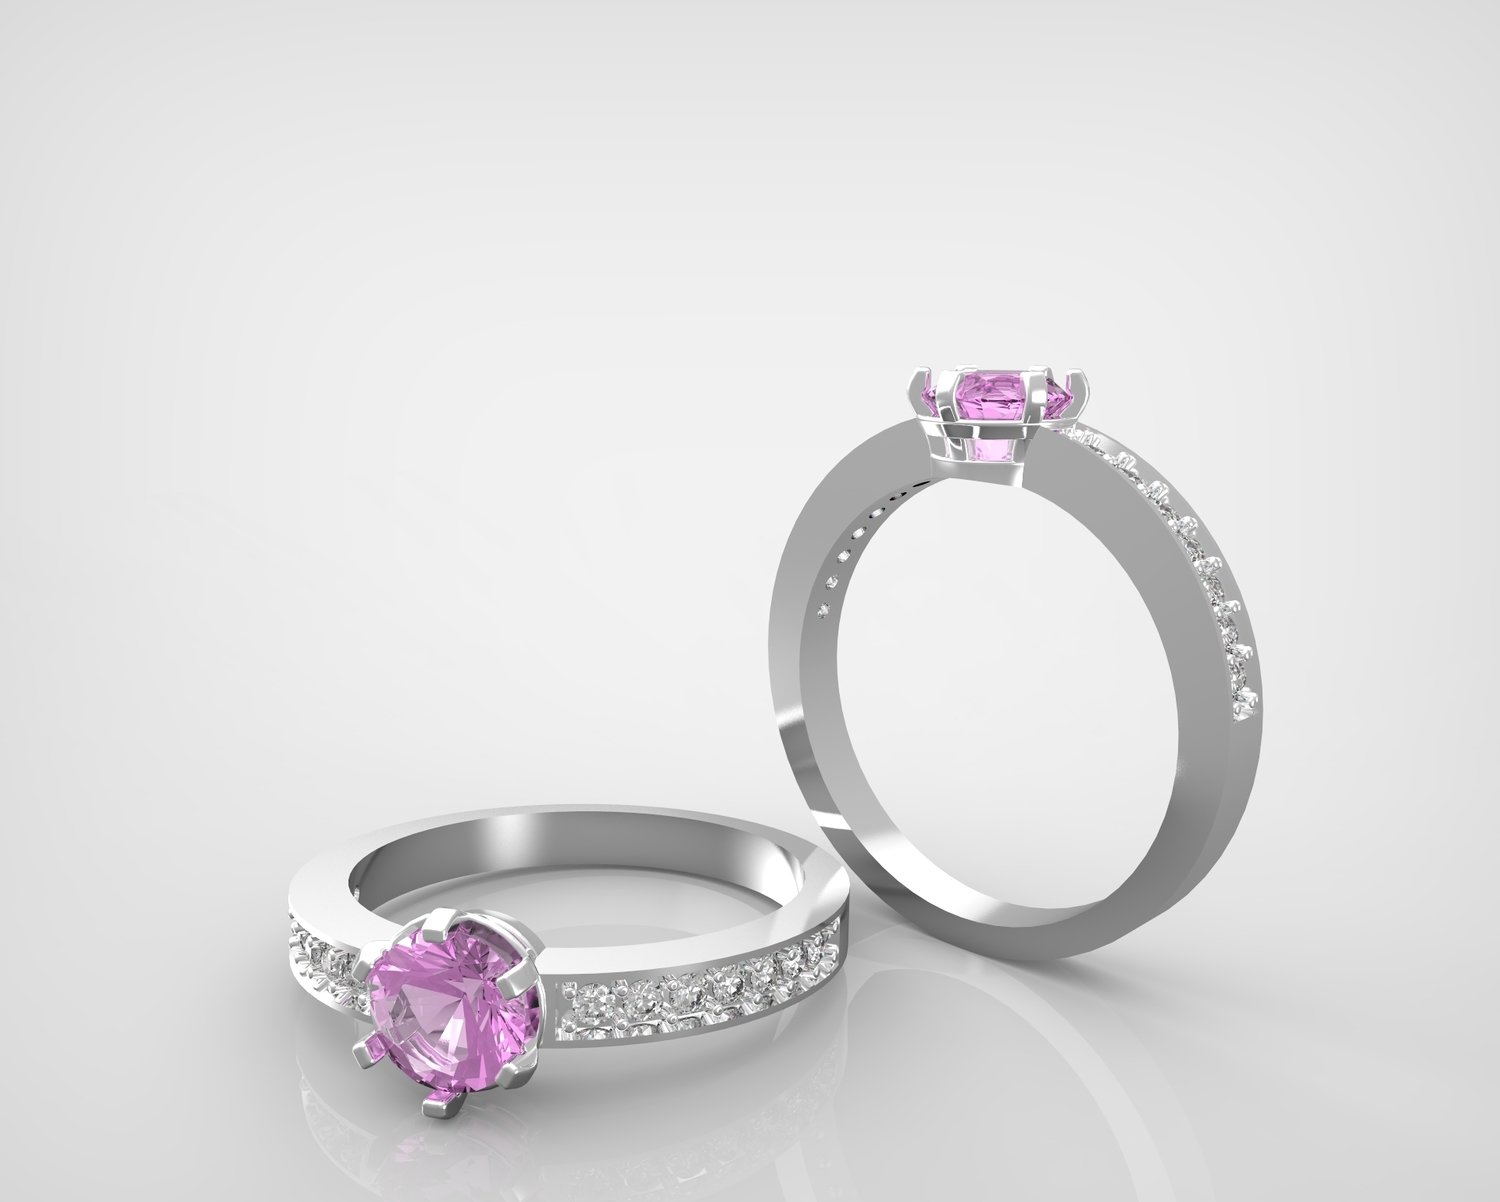 3Д файл модели свадебного кольца с бриллиантами